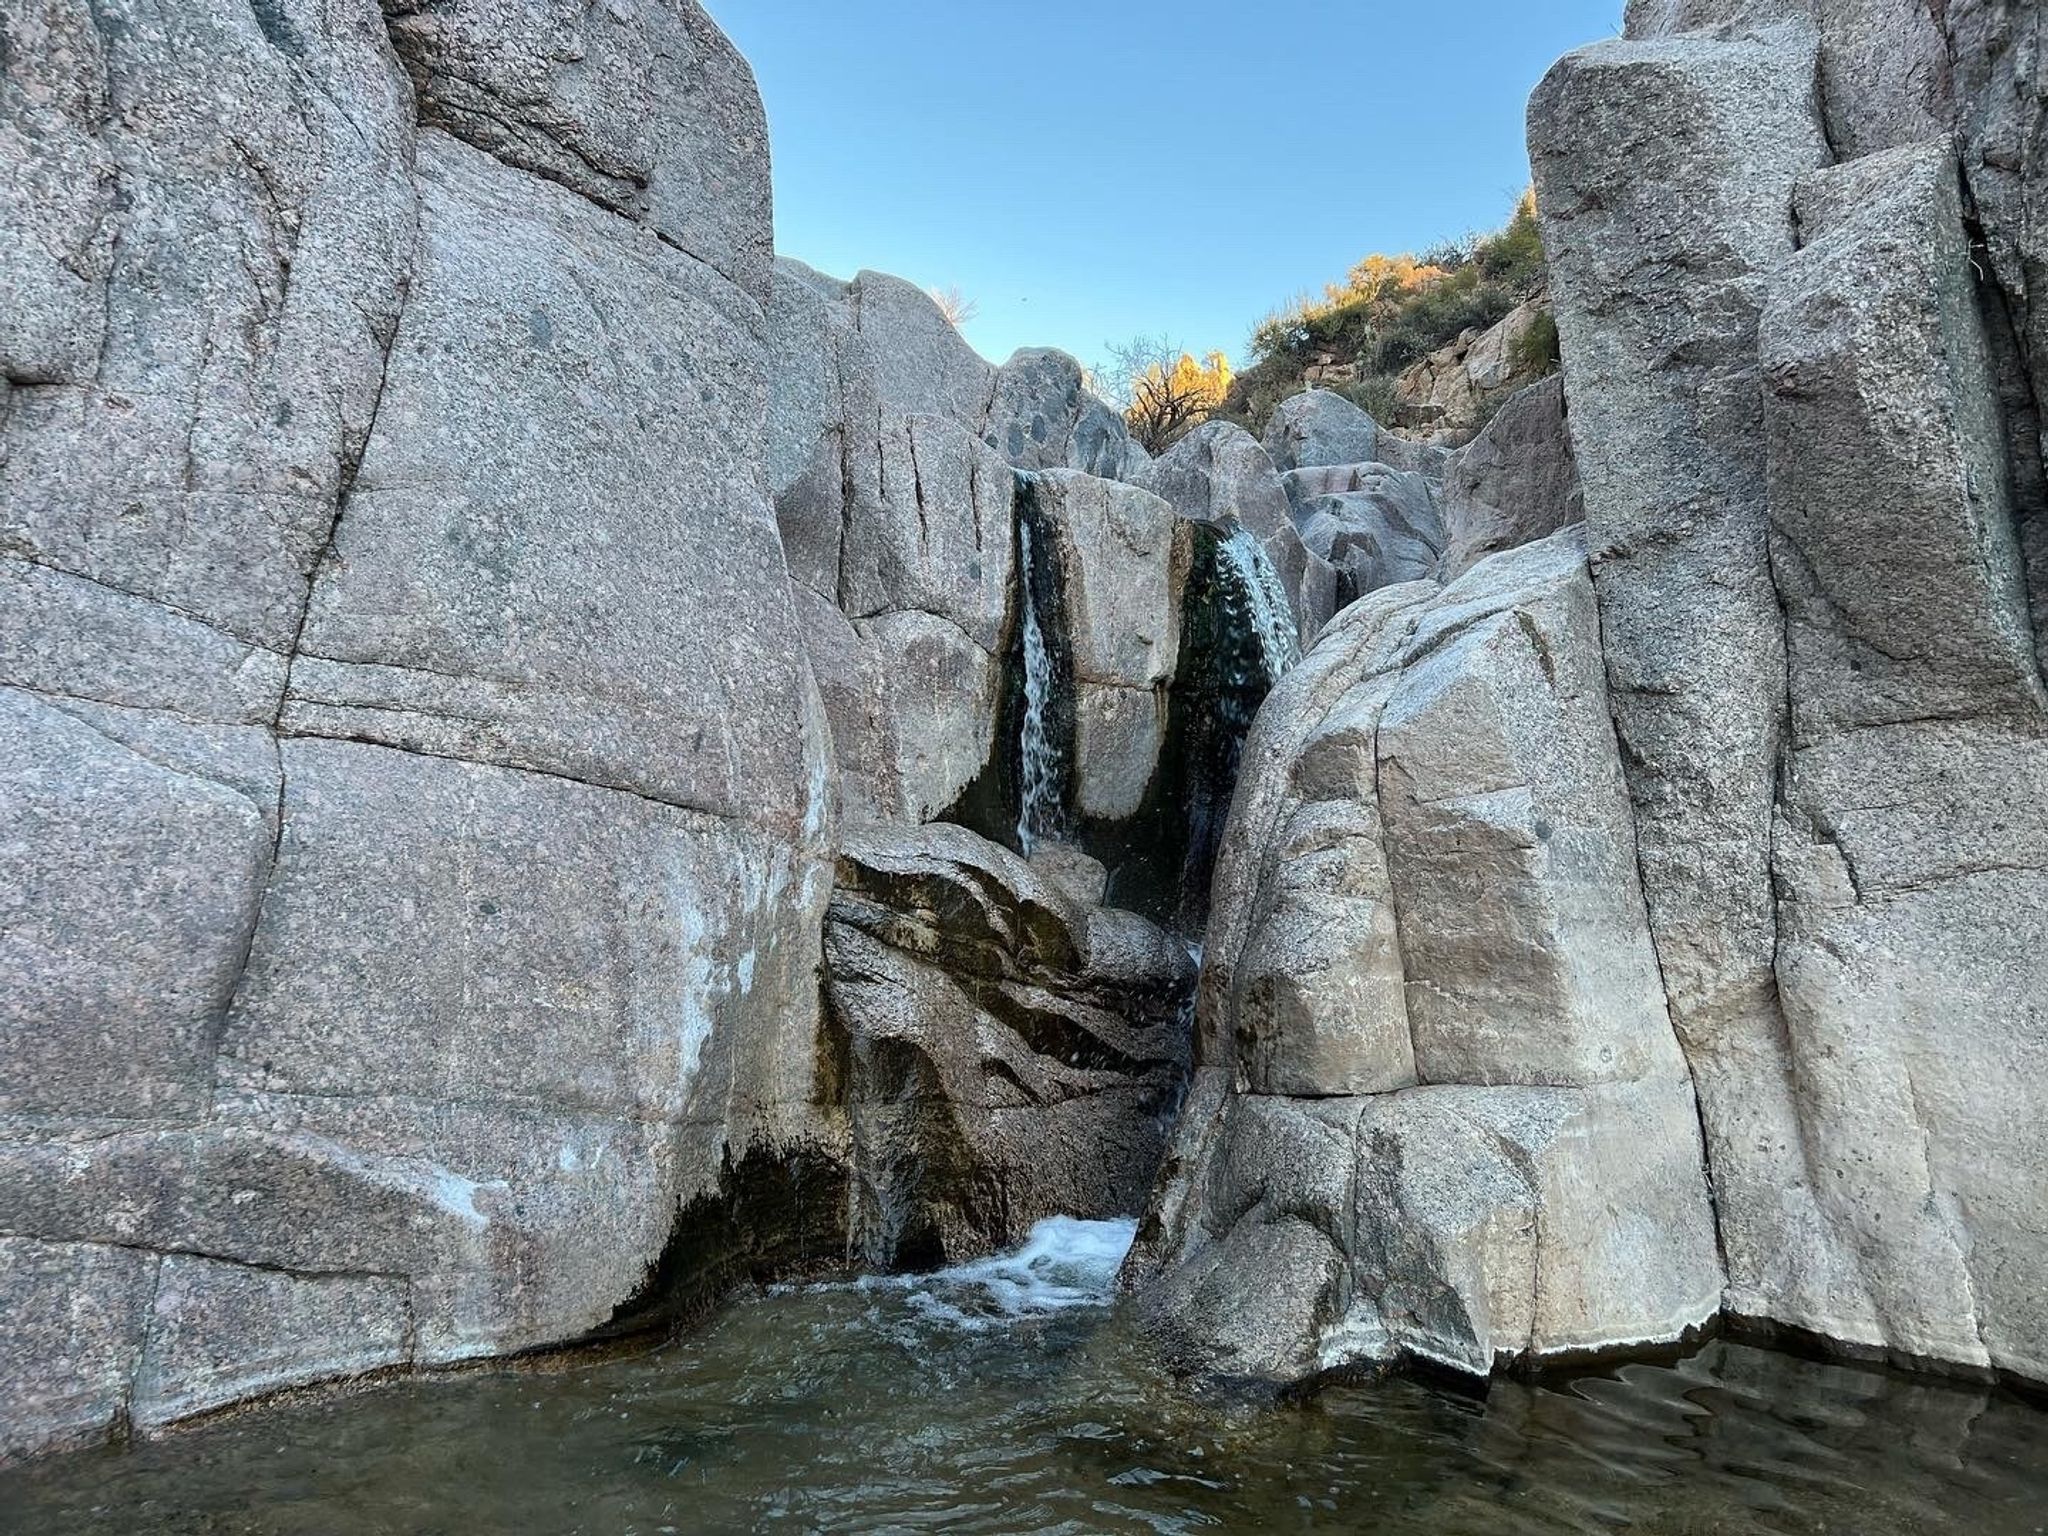 arizona waterfalls hiking FemaleHiker